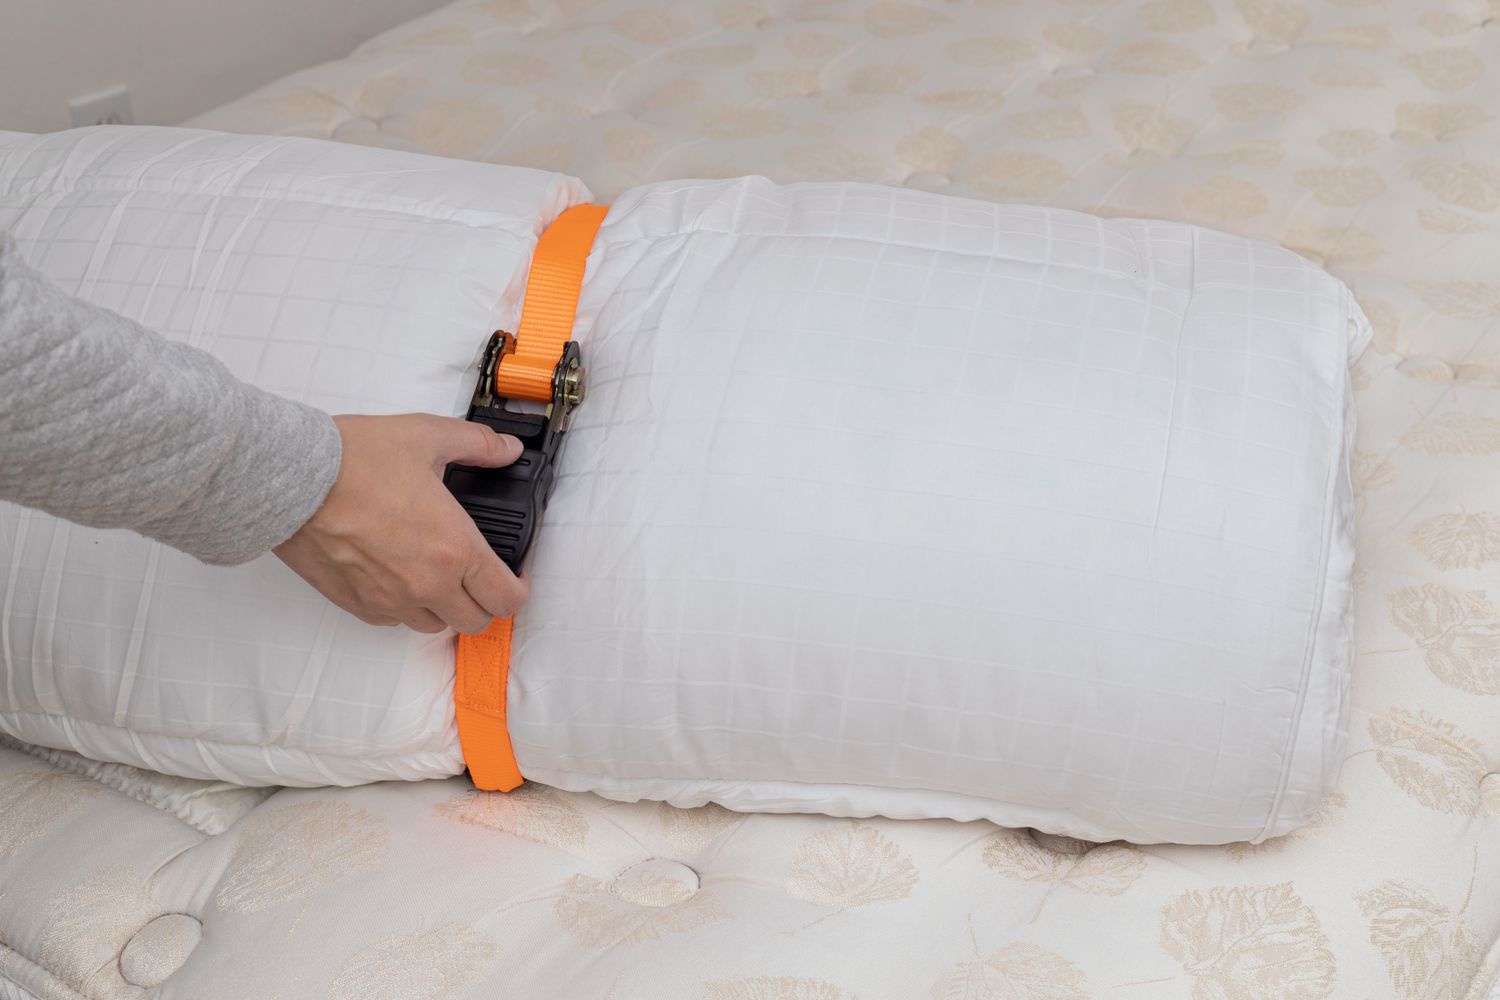 Orange ratchet strap tightened around rolled up mattress topper